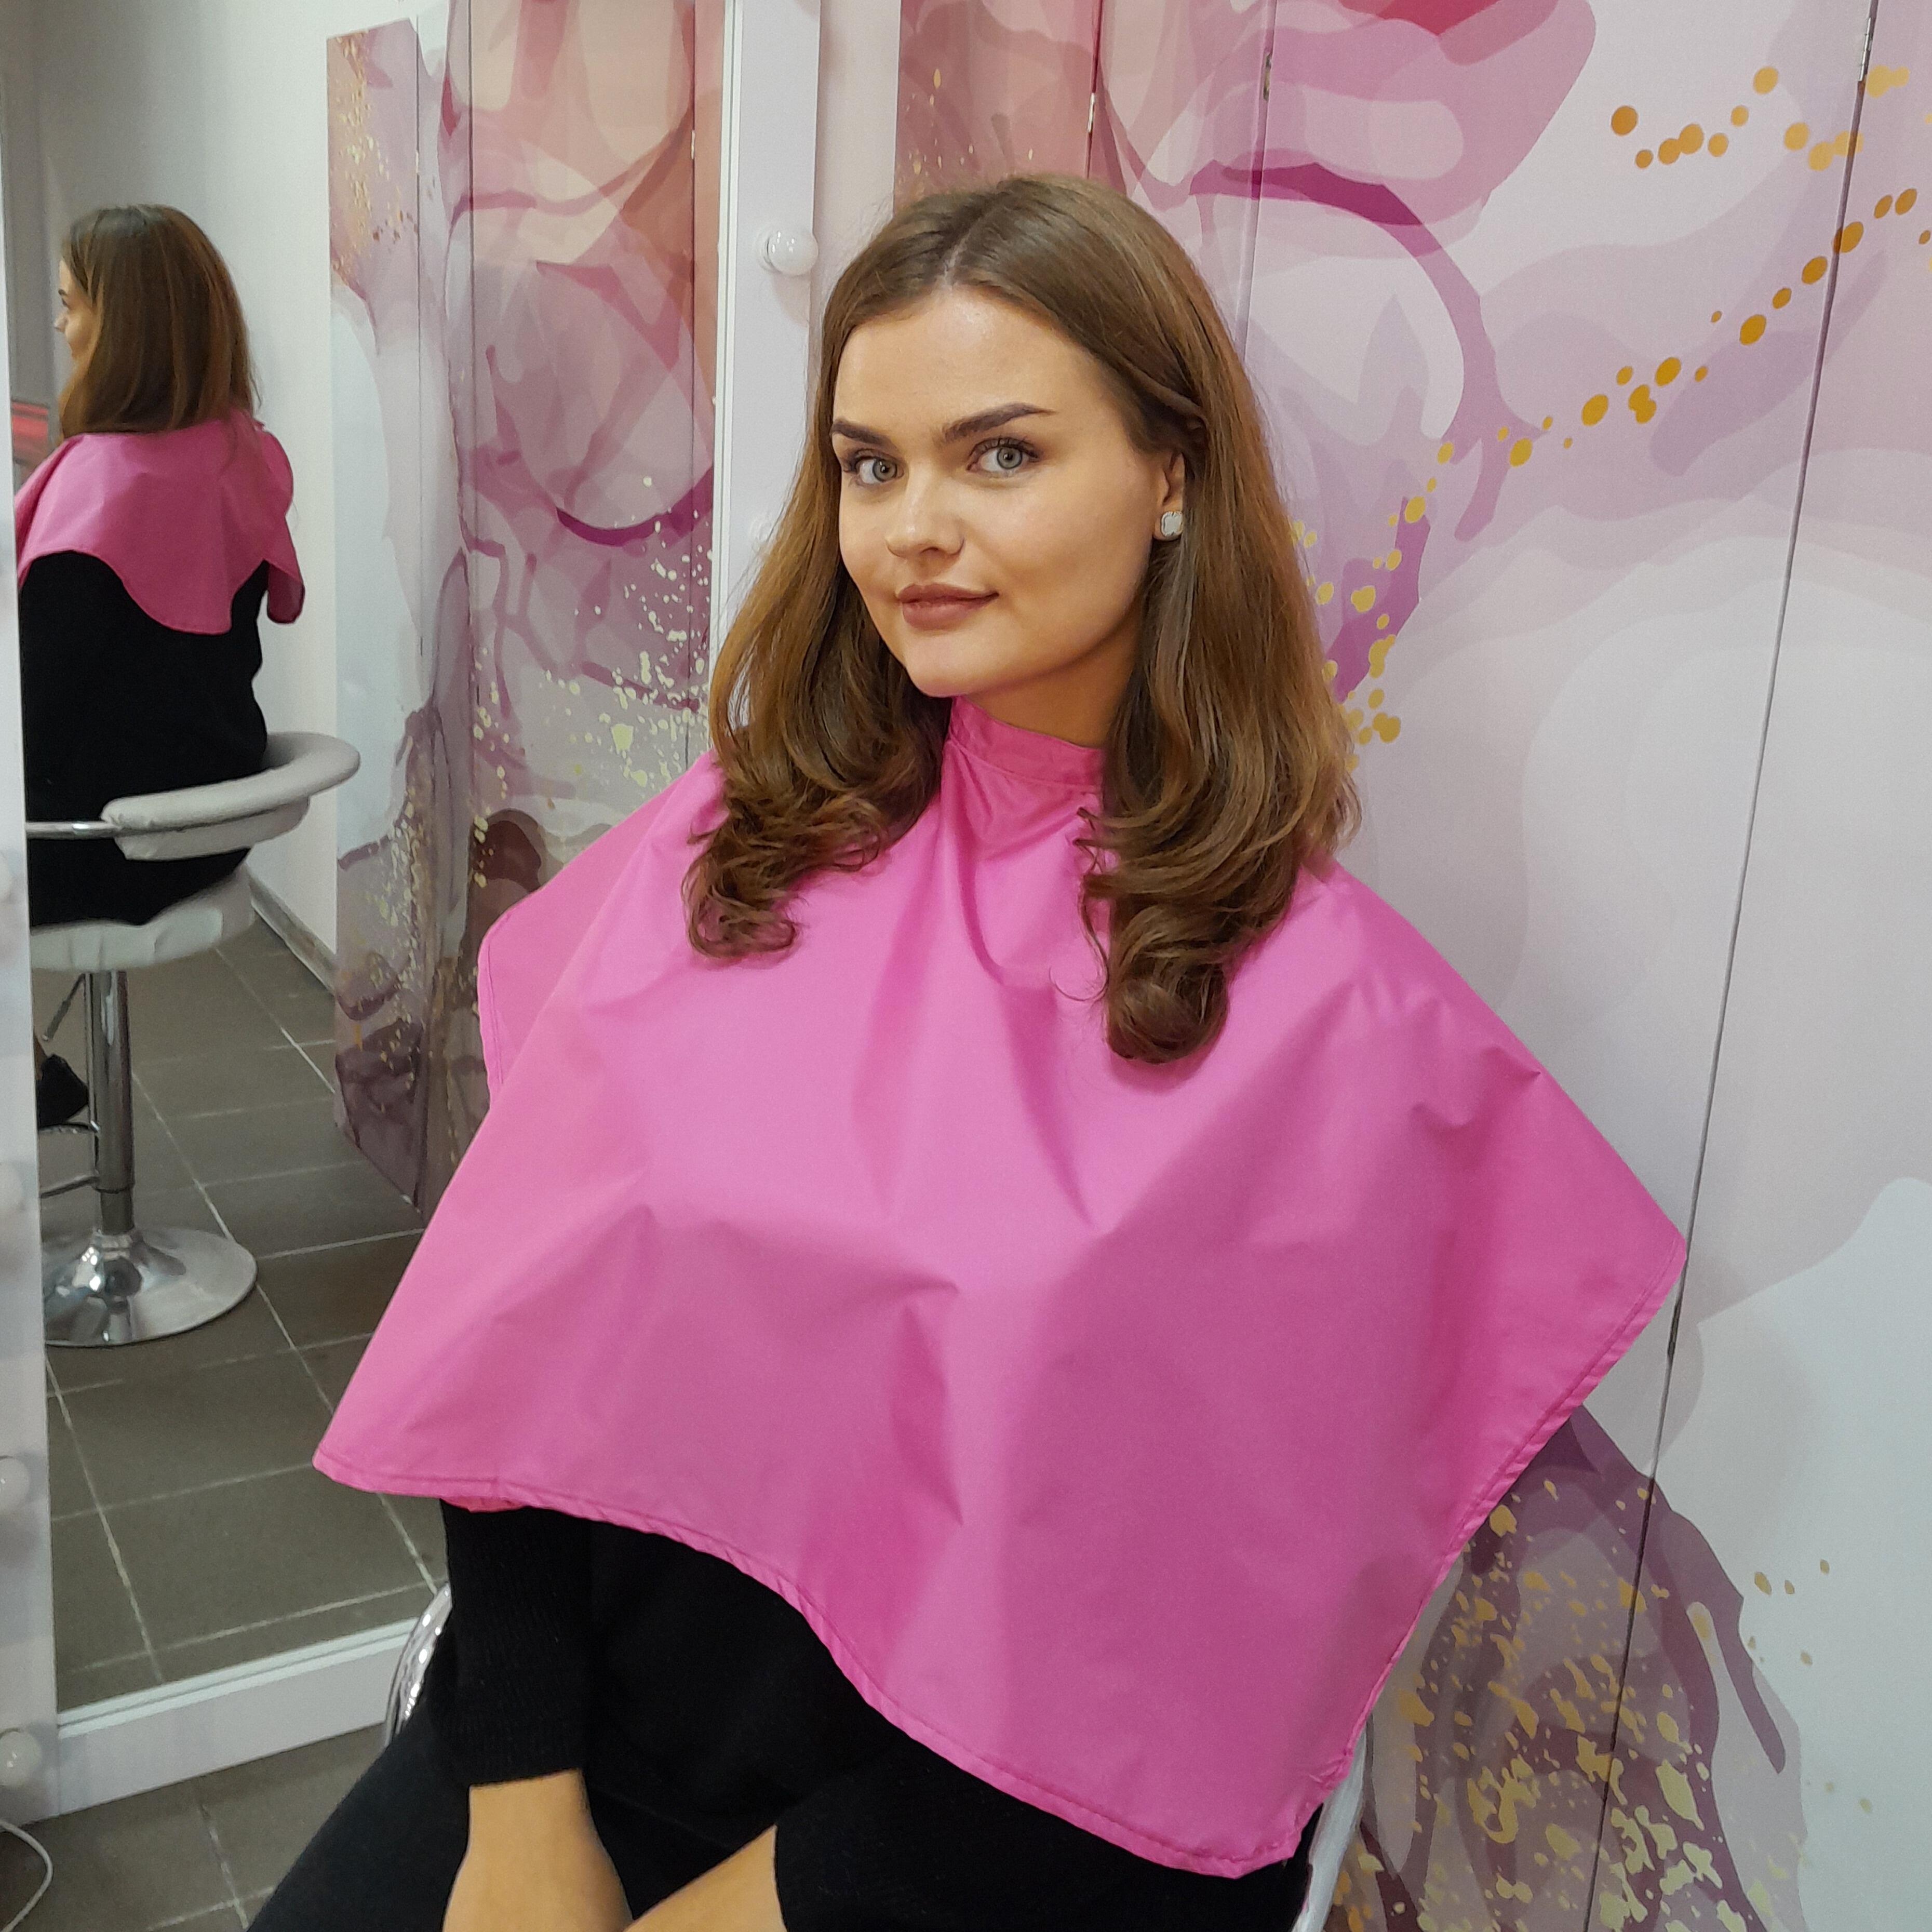 Bridal makeup artist clients cape pink barbie